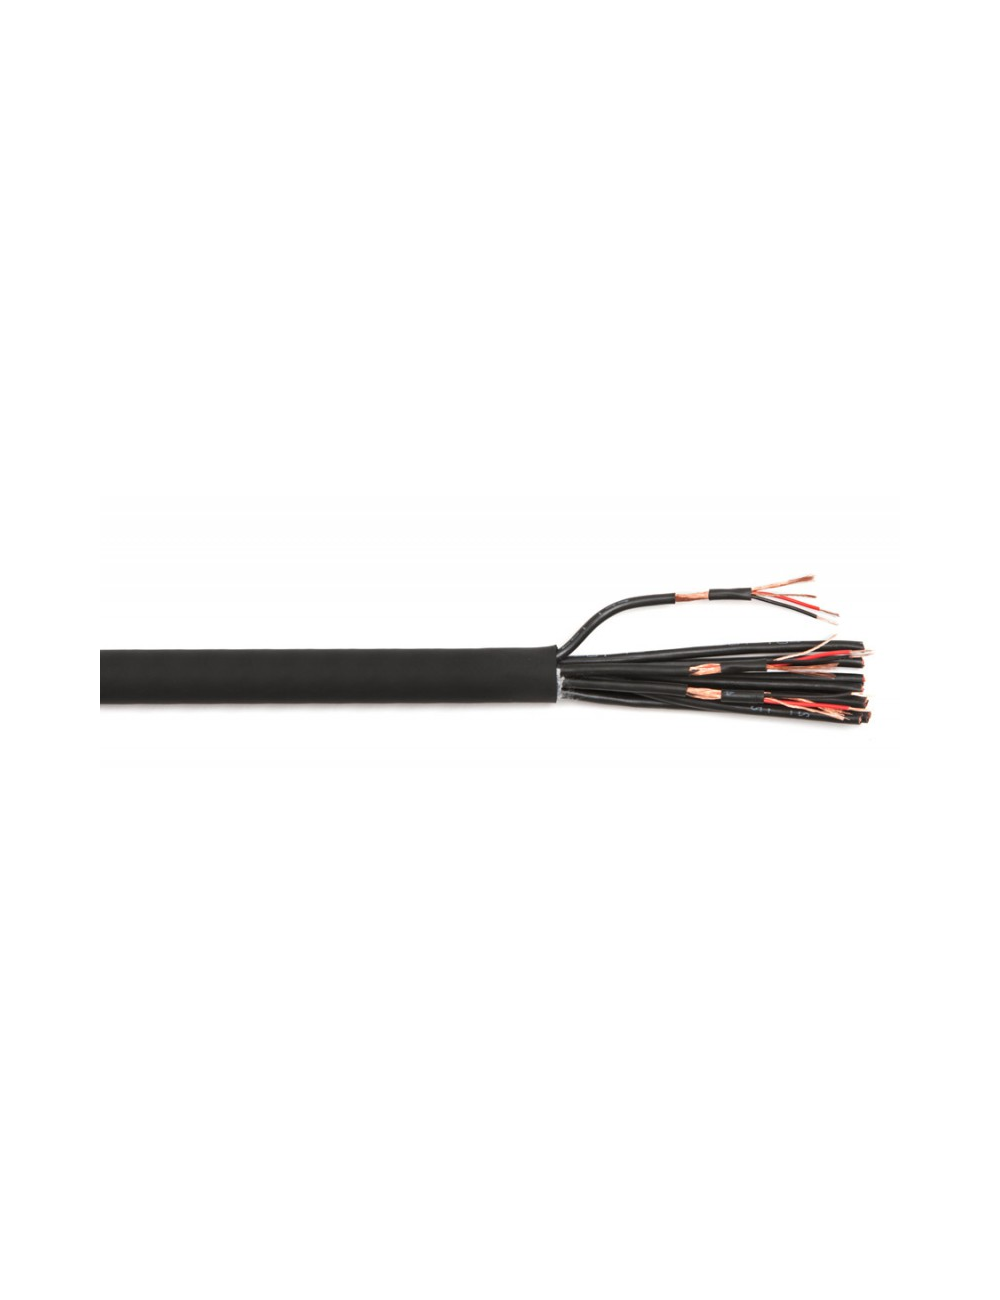 12 pair analog multi-pair cable (per meter)